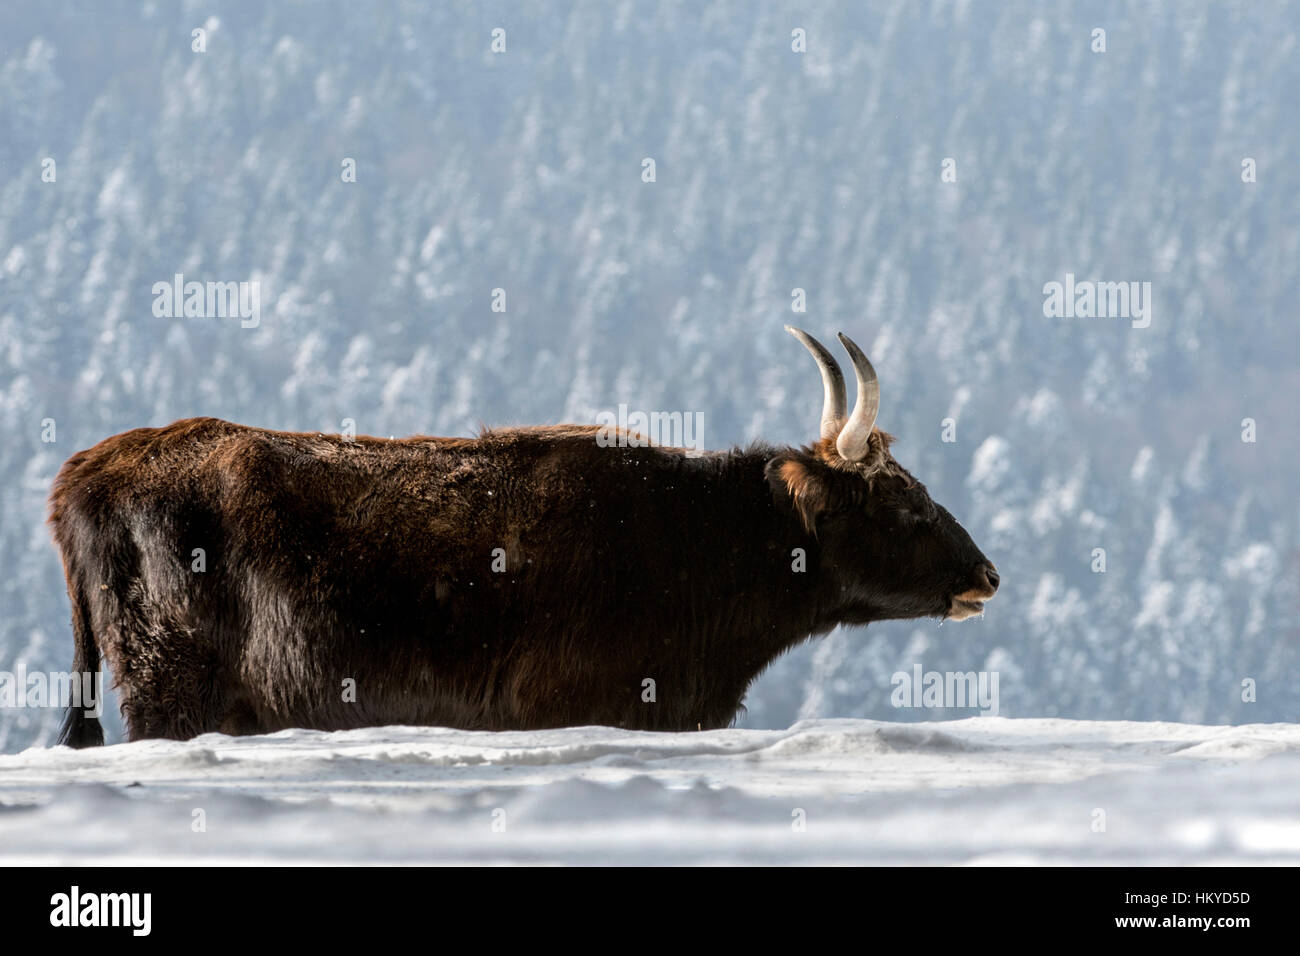 Heck bovins (Bos domesticus) vache dans la neige en hiver. Tentative de retour la race disparue d'aurochs (Bos primigenius) Banque D'Images